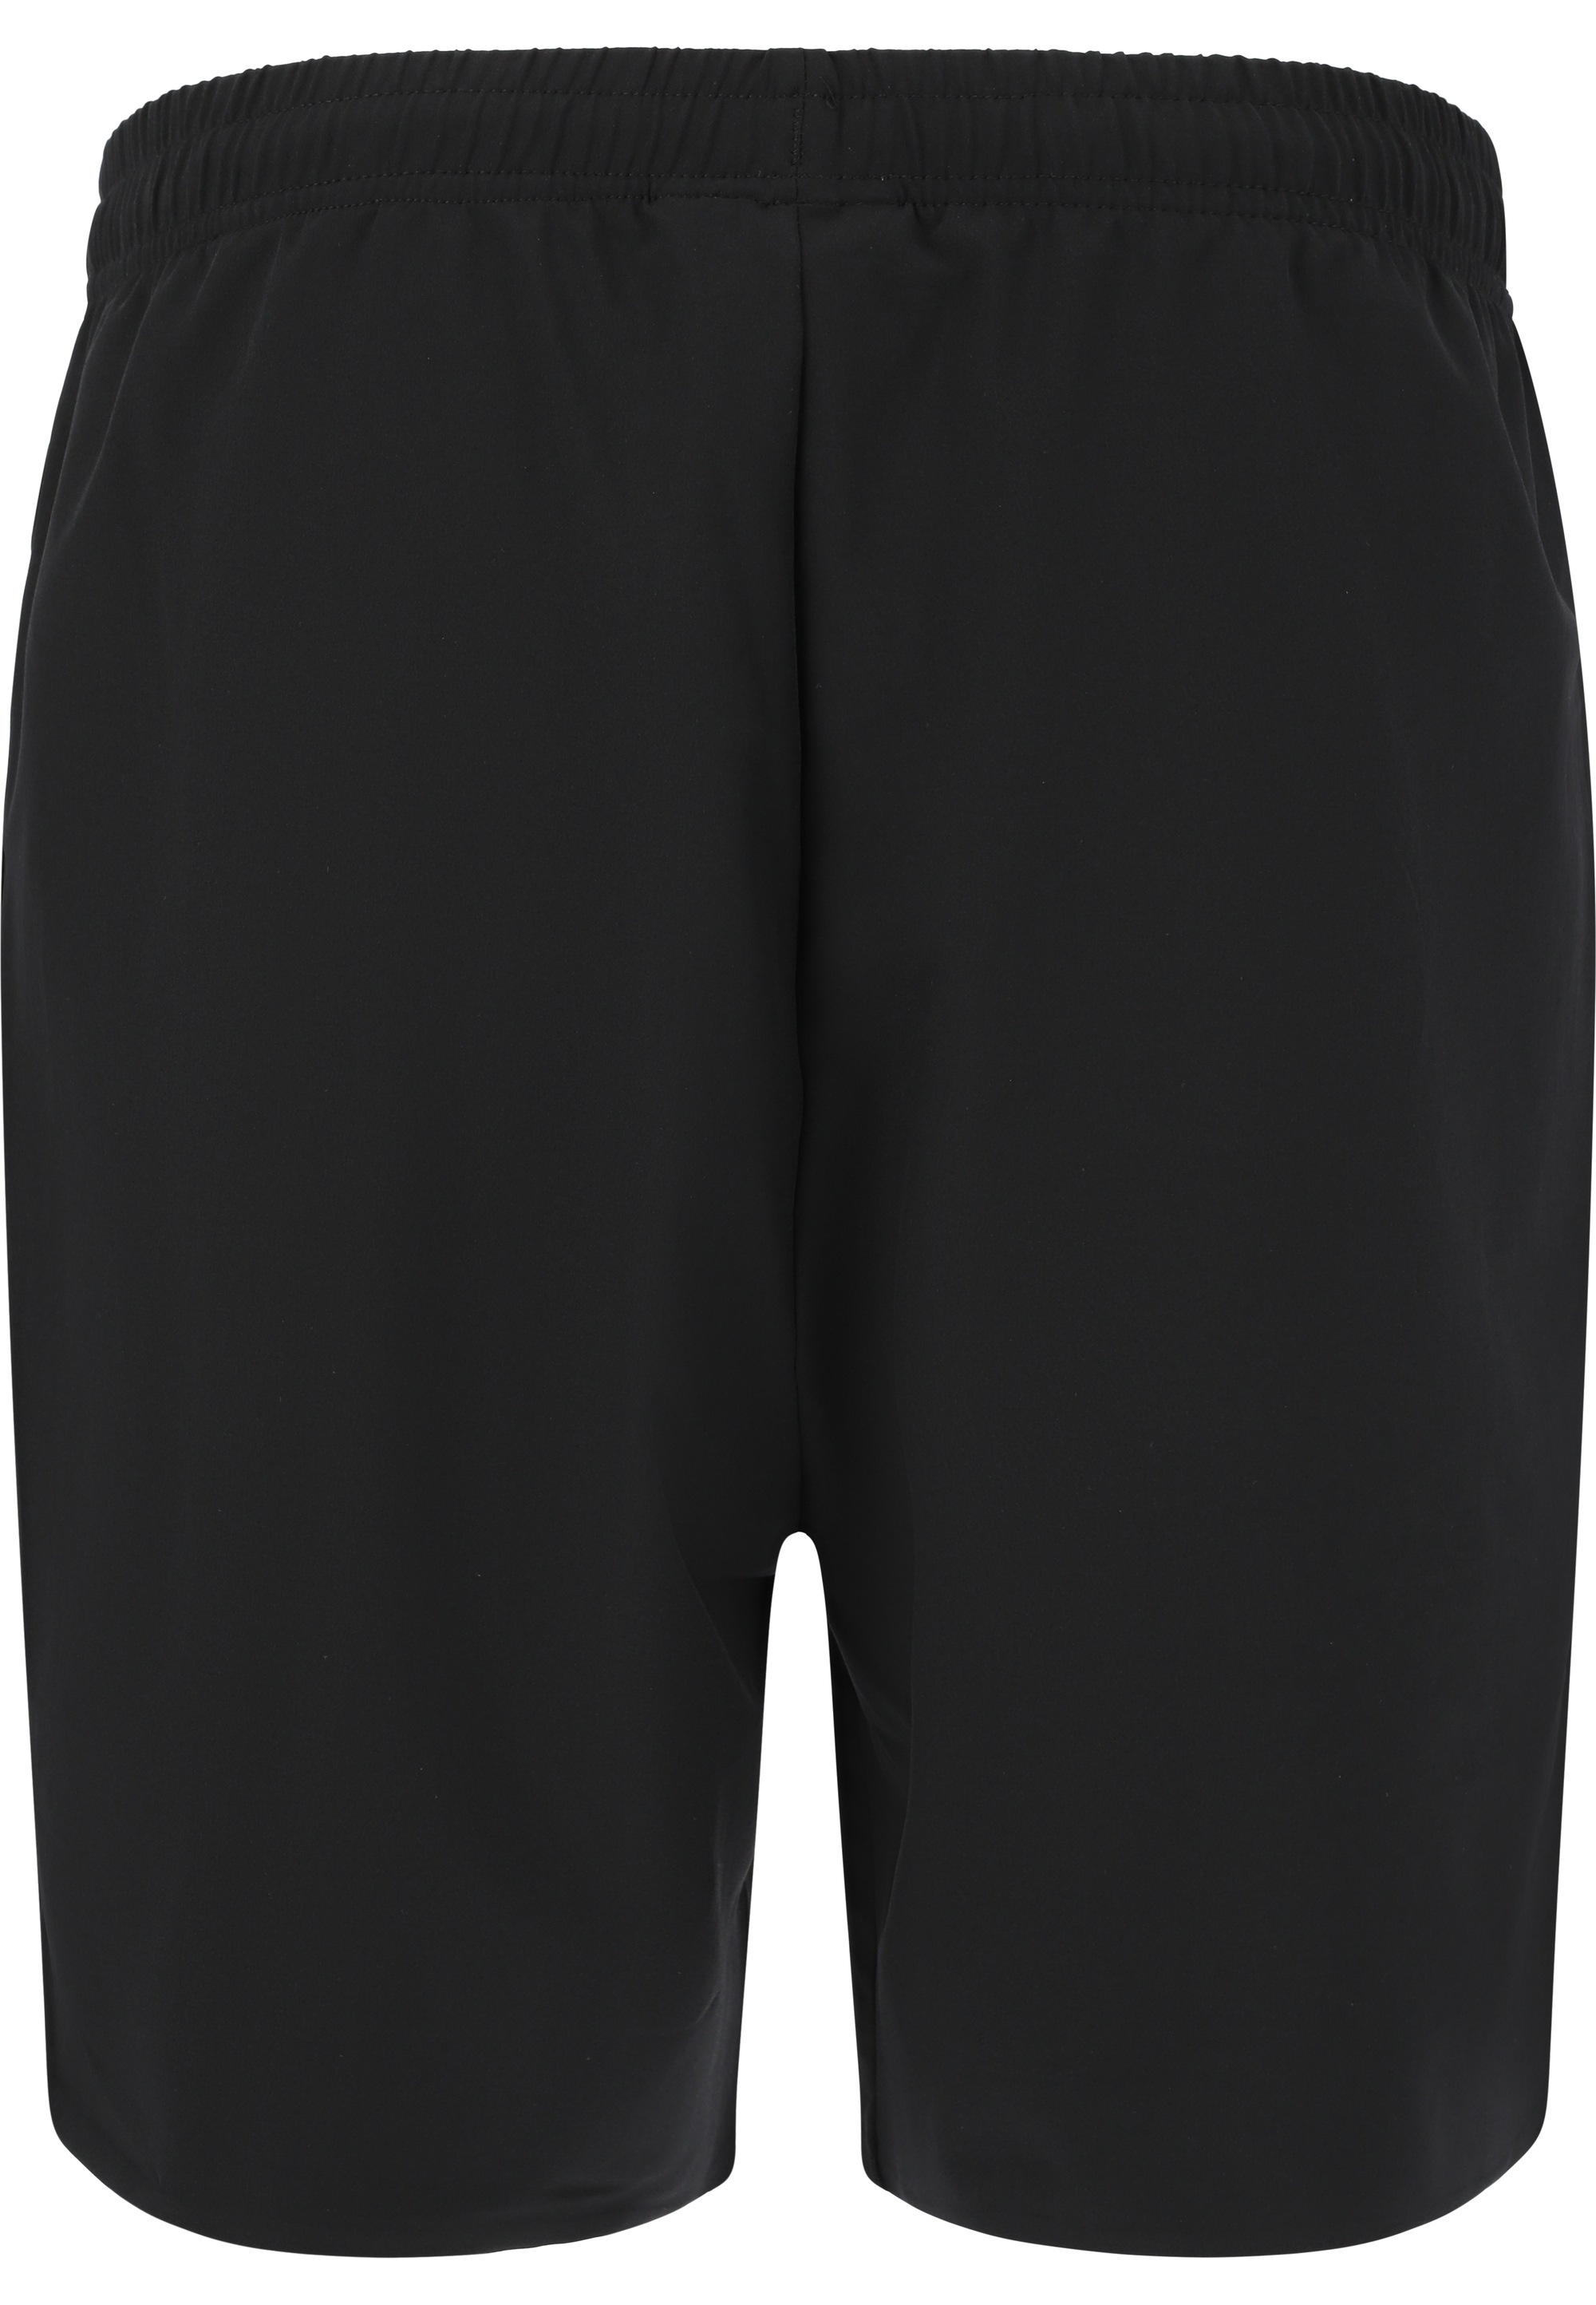 SOS Shorts »Niseko«, aus hochwertigem Stretch-Material